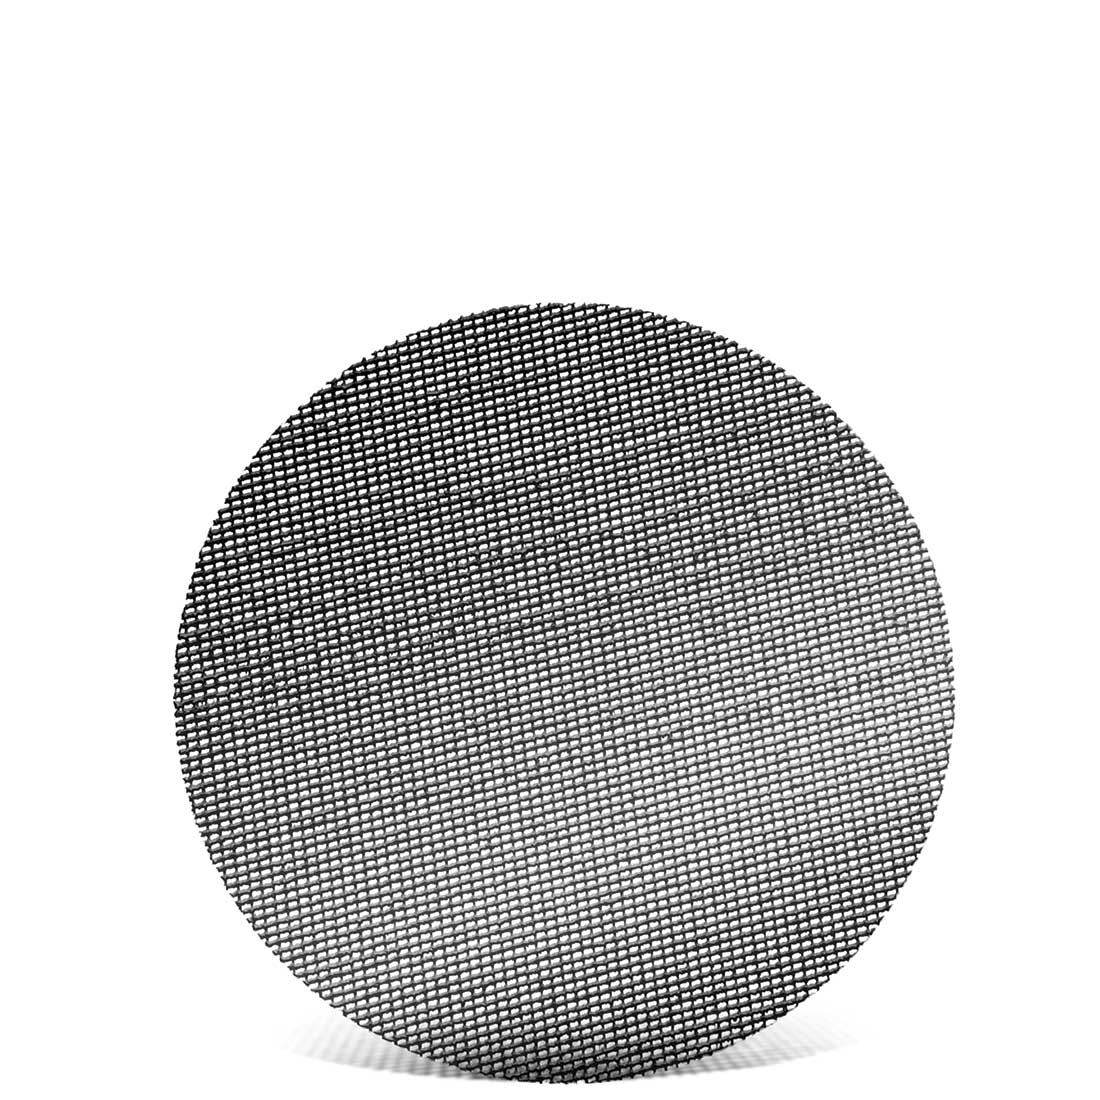 MENZER Schleifgitter für Einscheibenmaschinen, K60–220, Ø 375 mm / Gitter / Siliciumcarbid